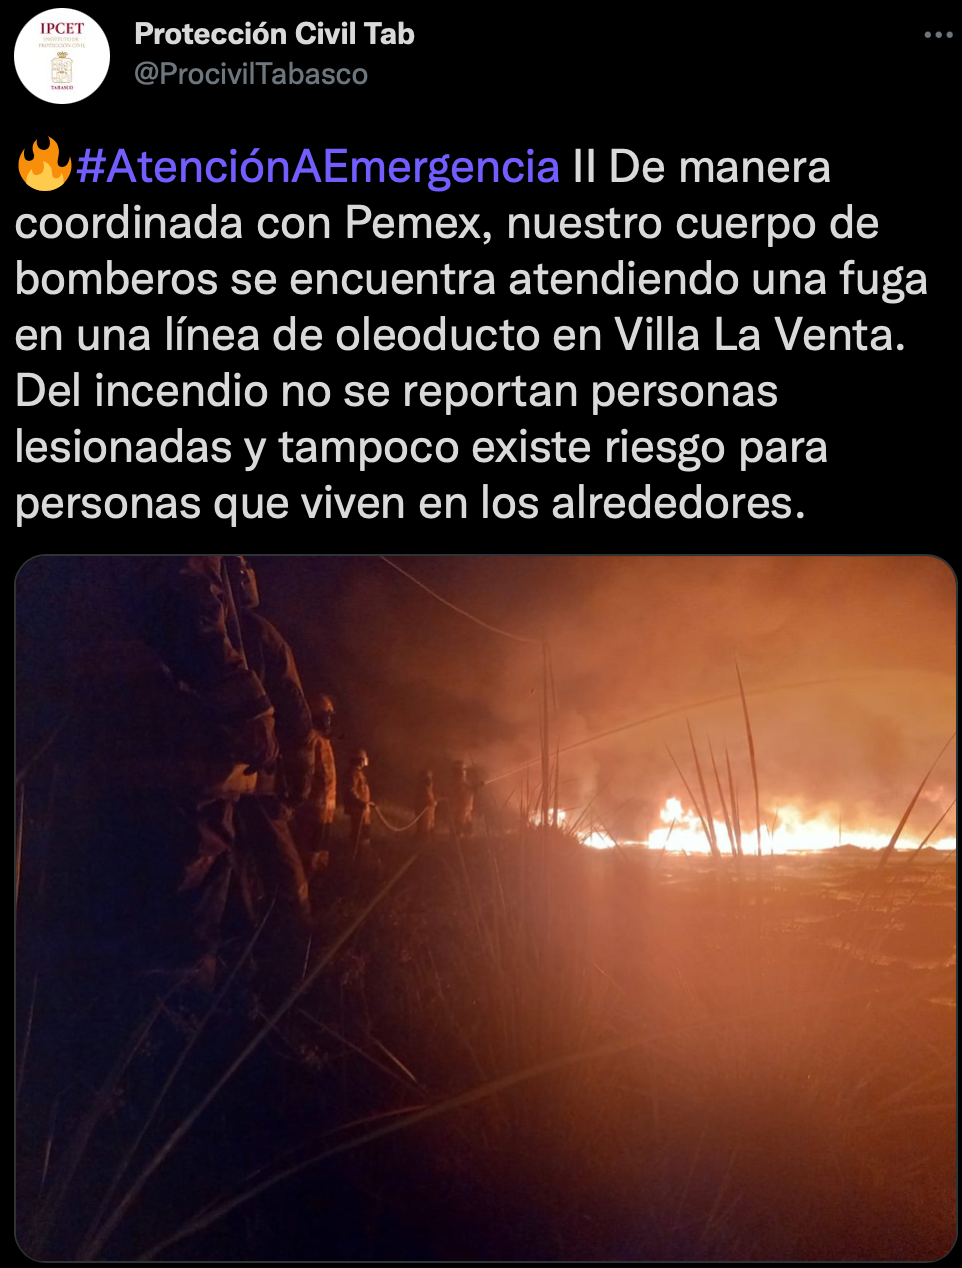 Protección Civil de Tabasco notificó que no se reportan personas lesionadas (Foto: Twitter/@ProcivilTabasco)